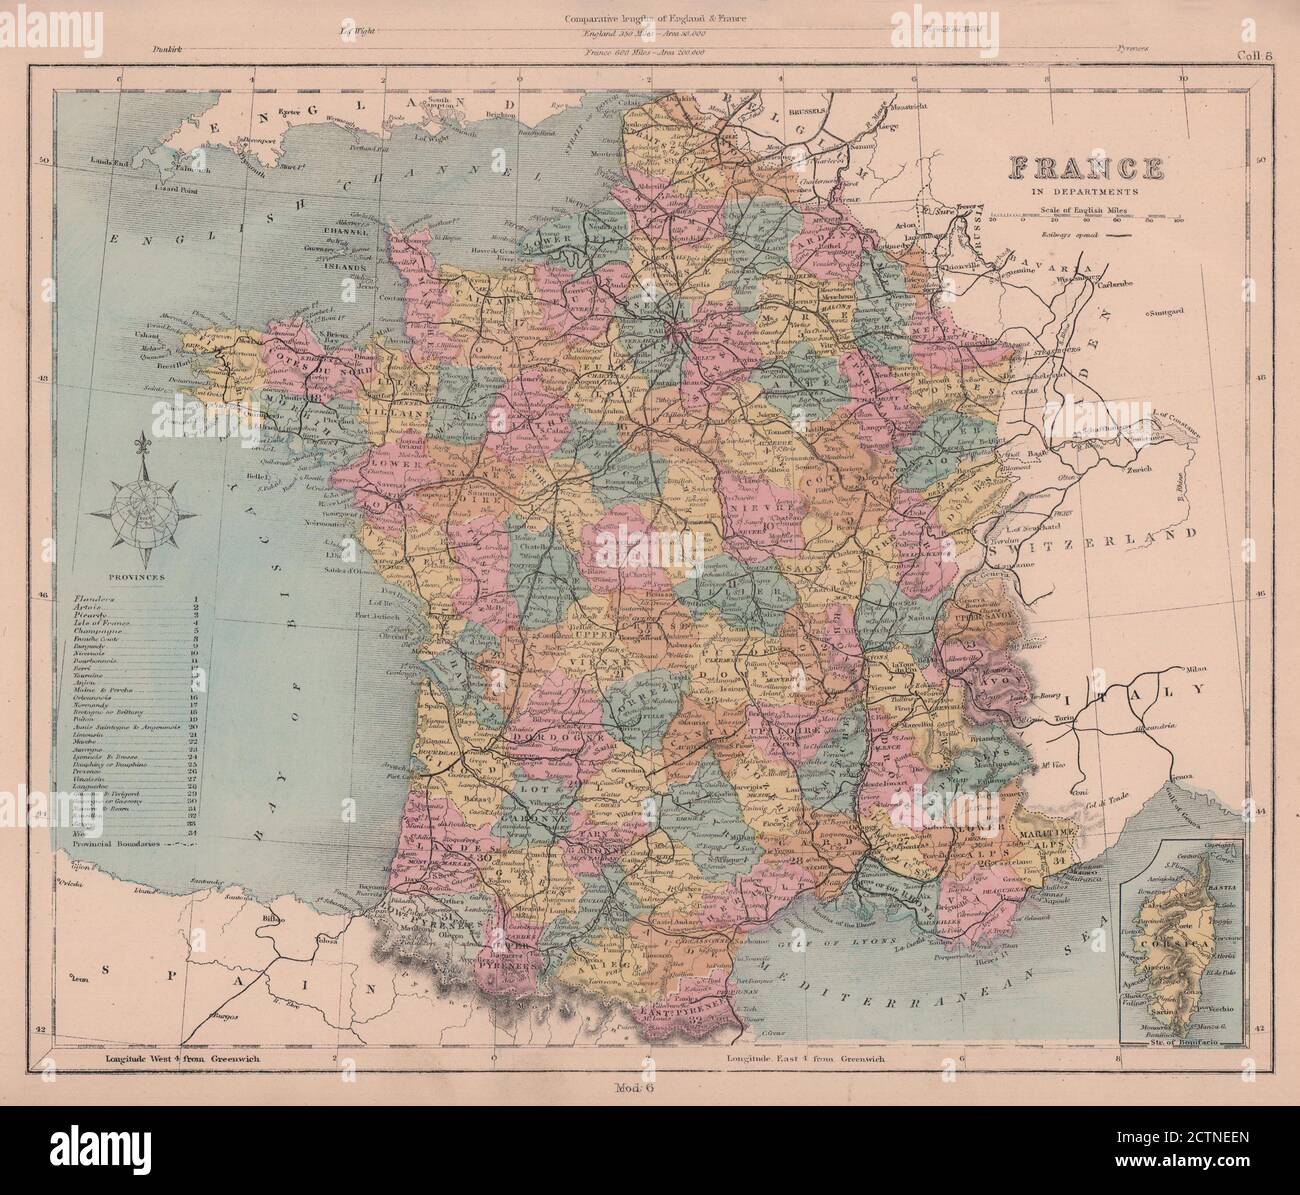 France dans les départements sans Alsace Lorraine. Inclut Genève. CARTE HUGHES 1876 Banque D'Images